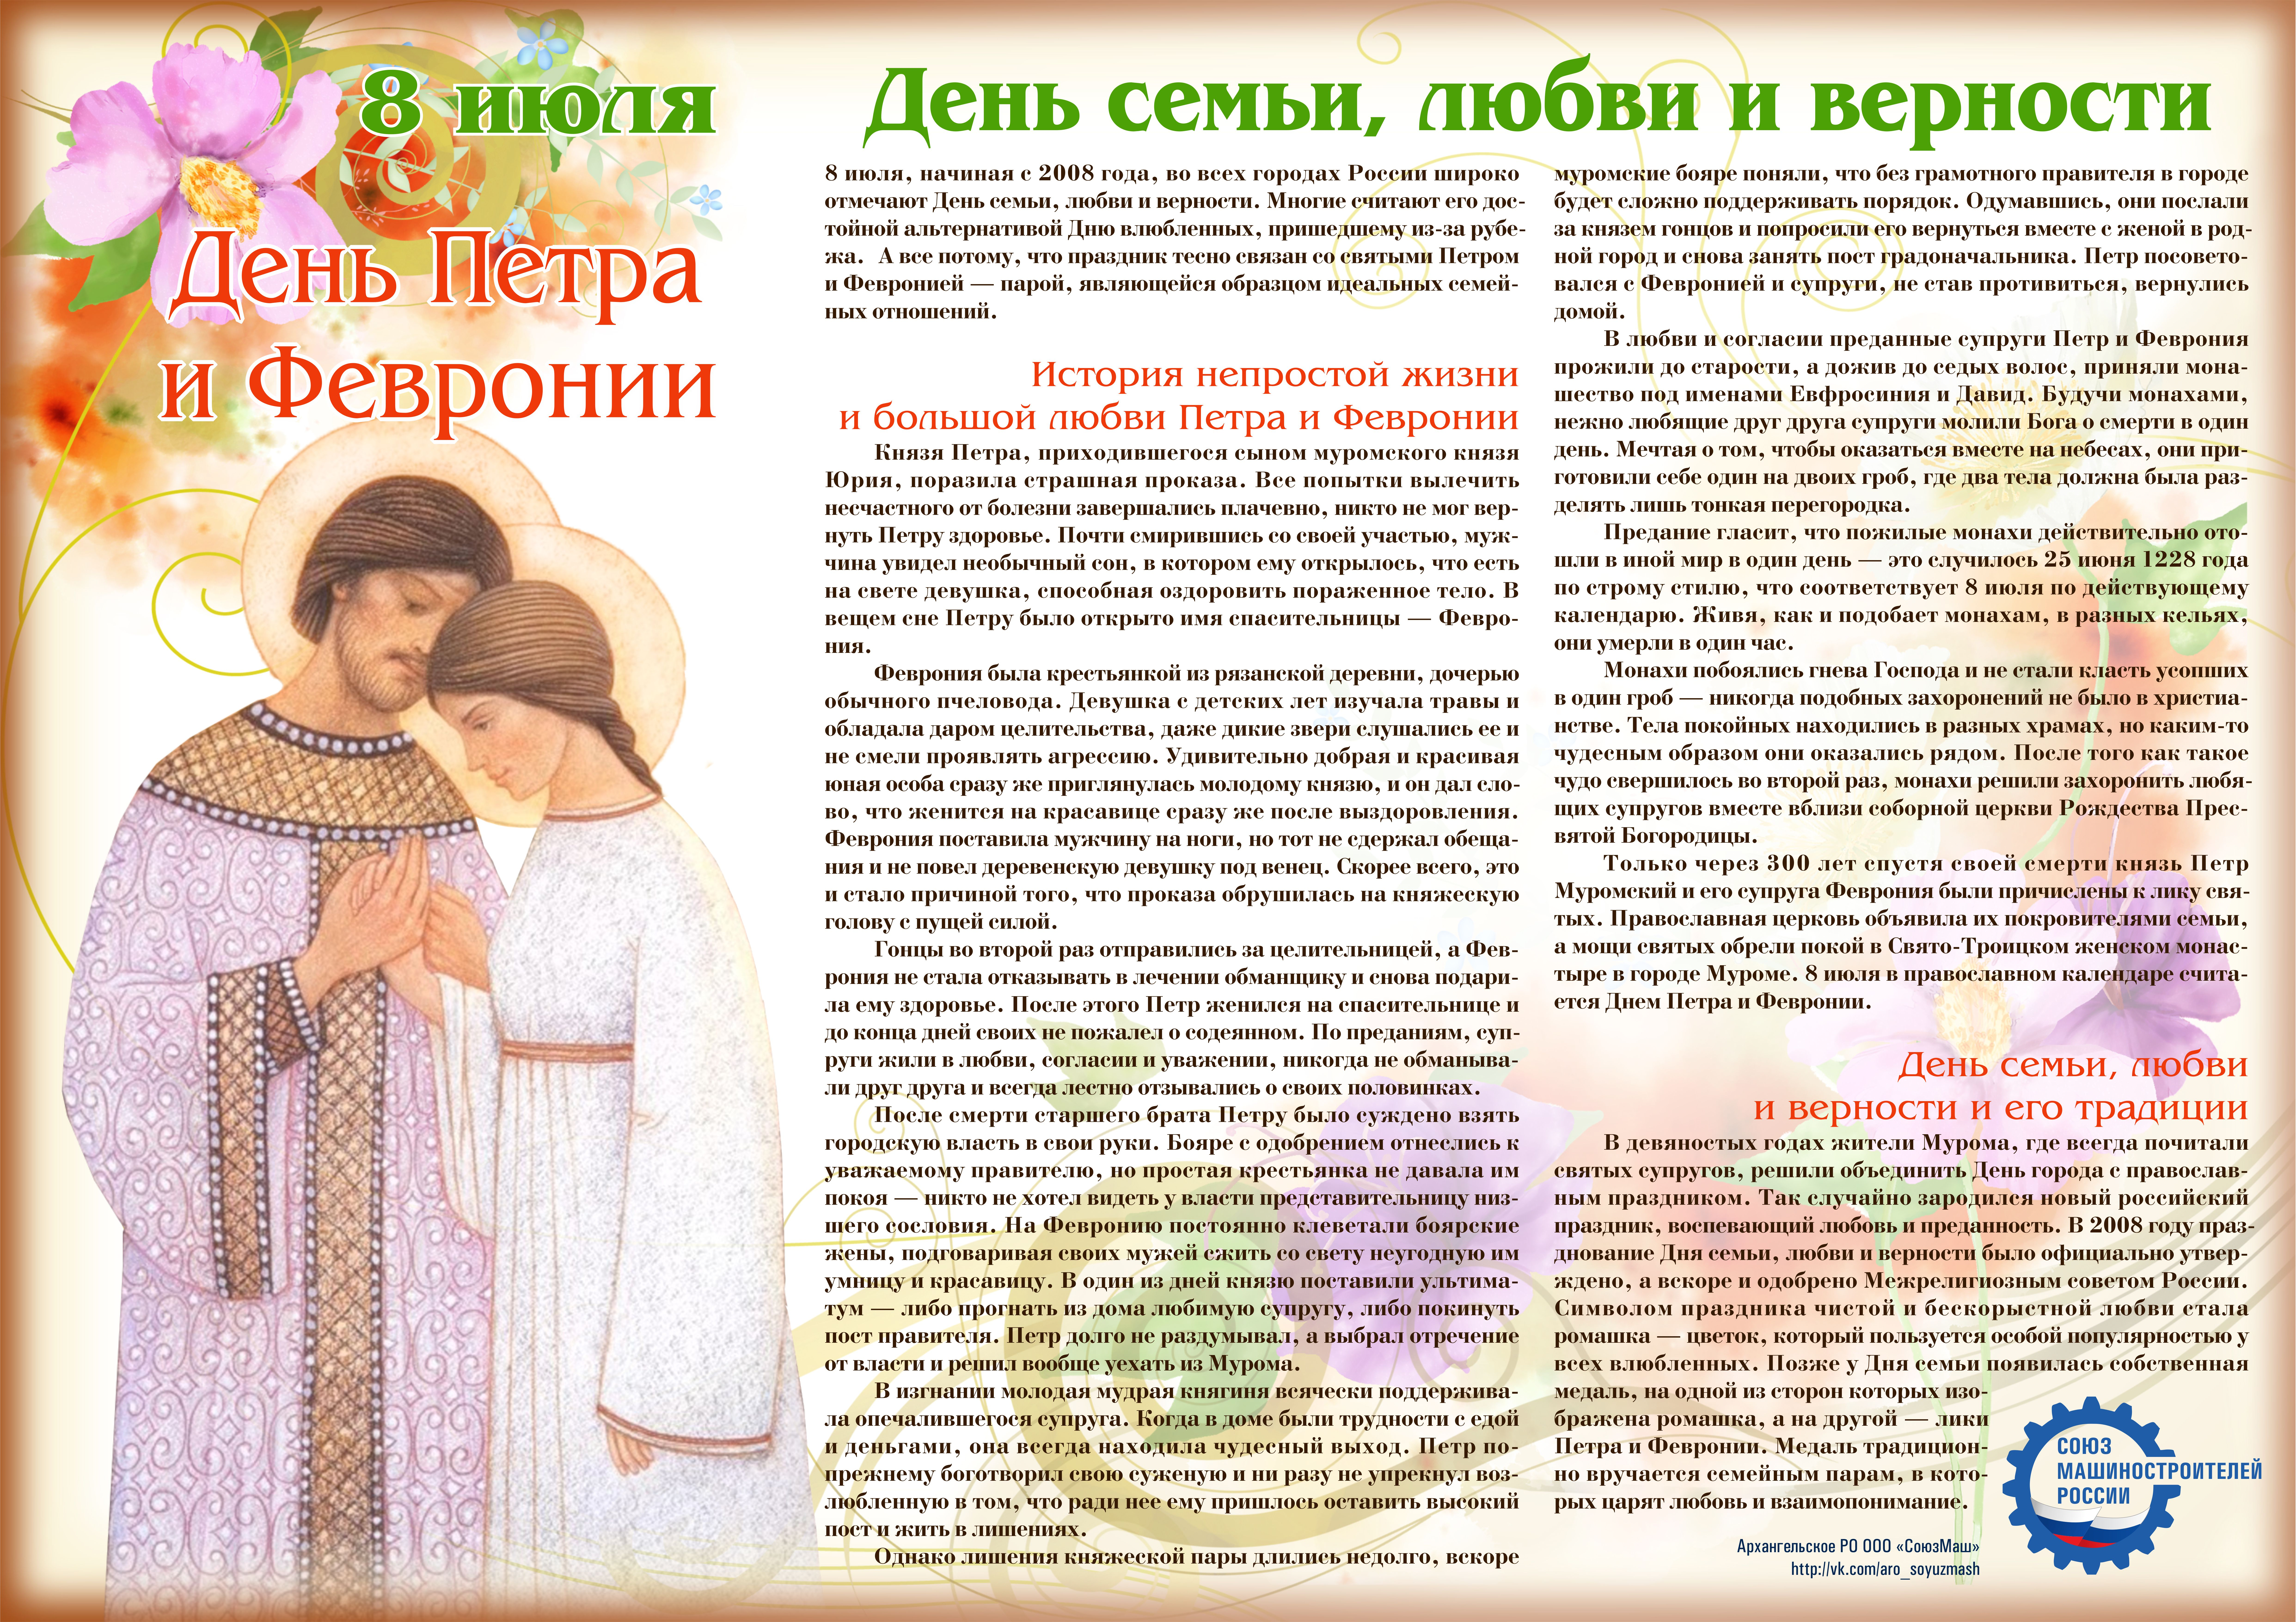 День семьи, любви и верности отмечается во всей россии ежегодно 8 июля - 1rre